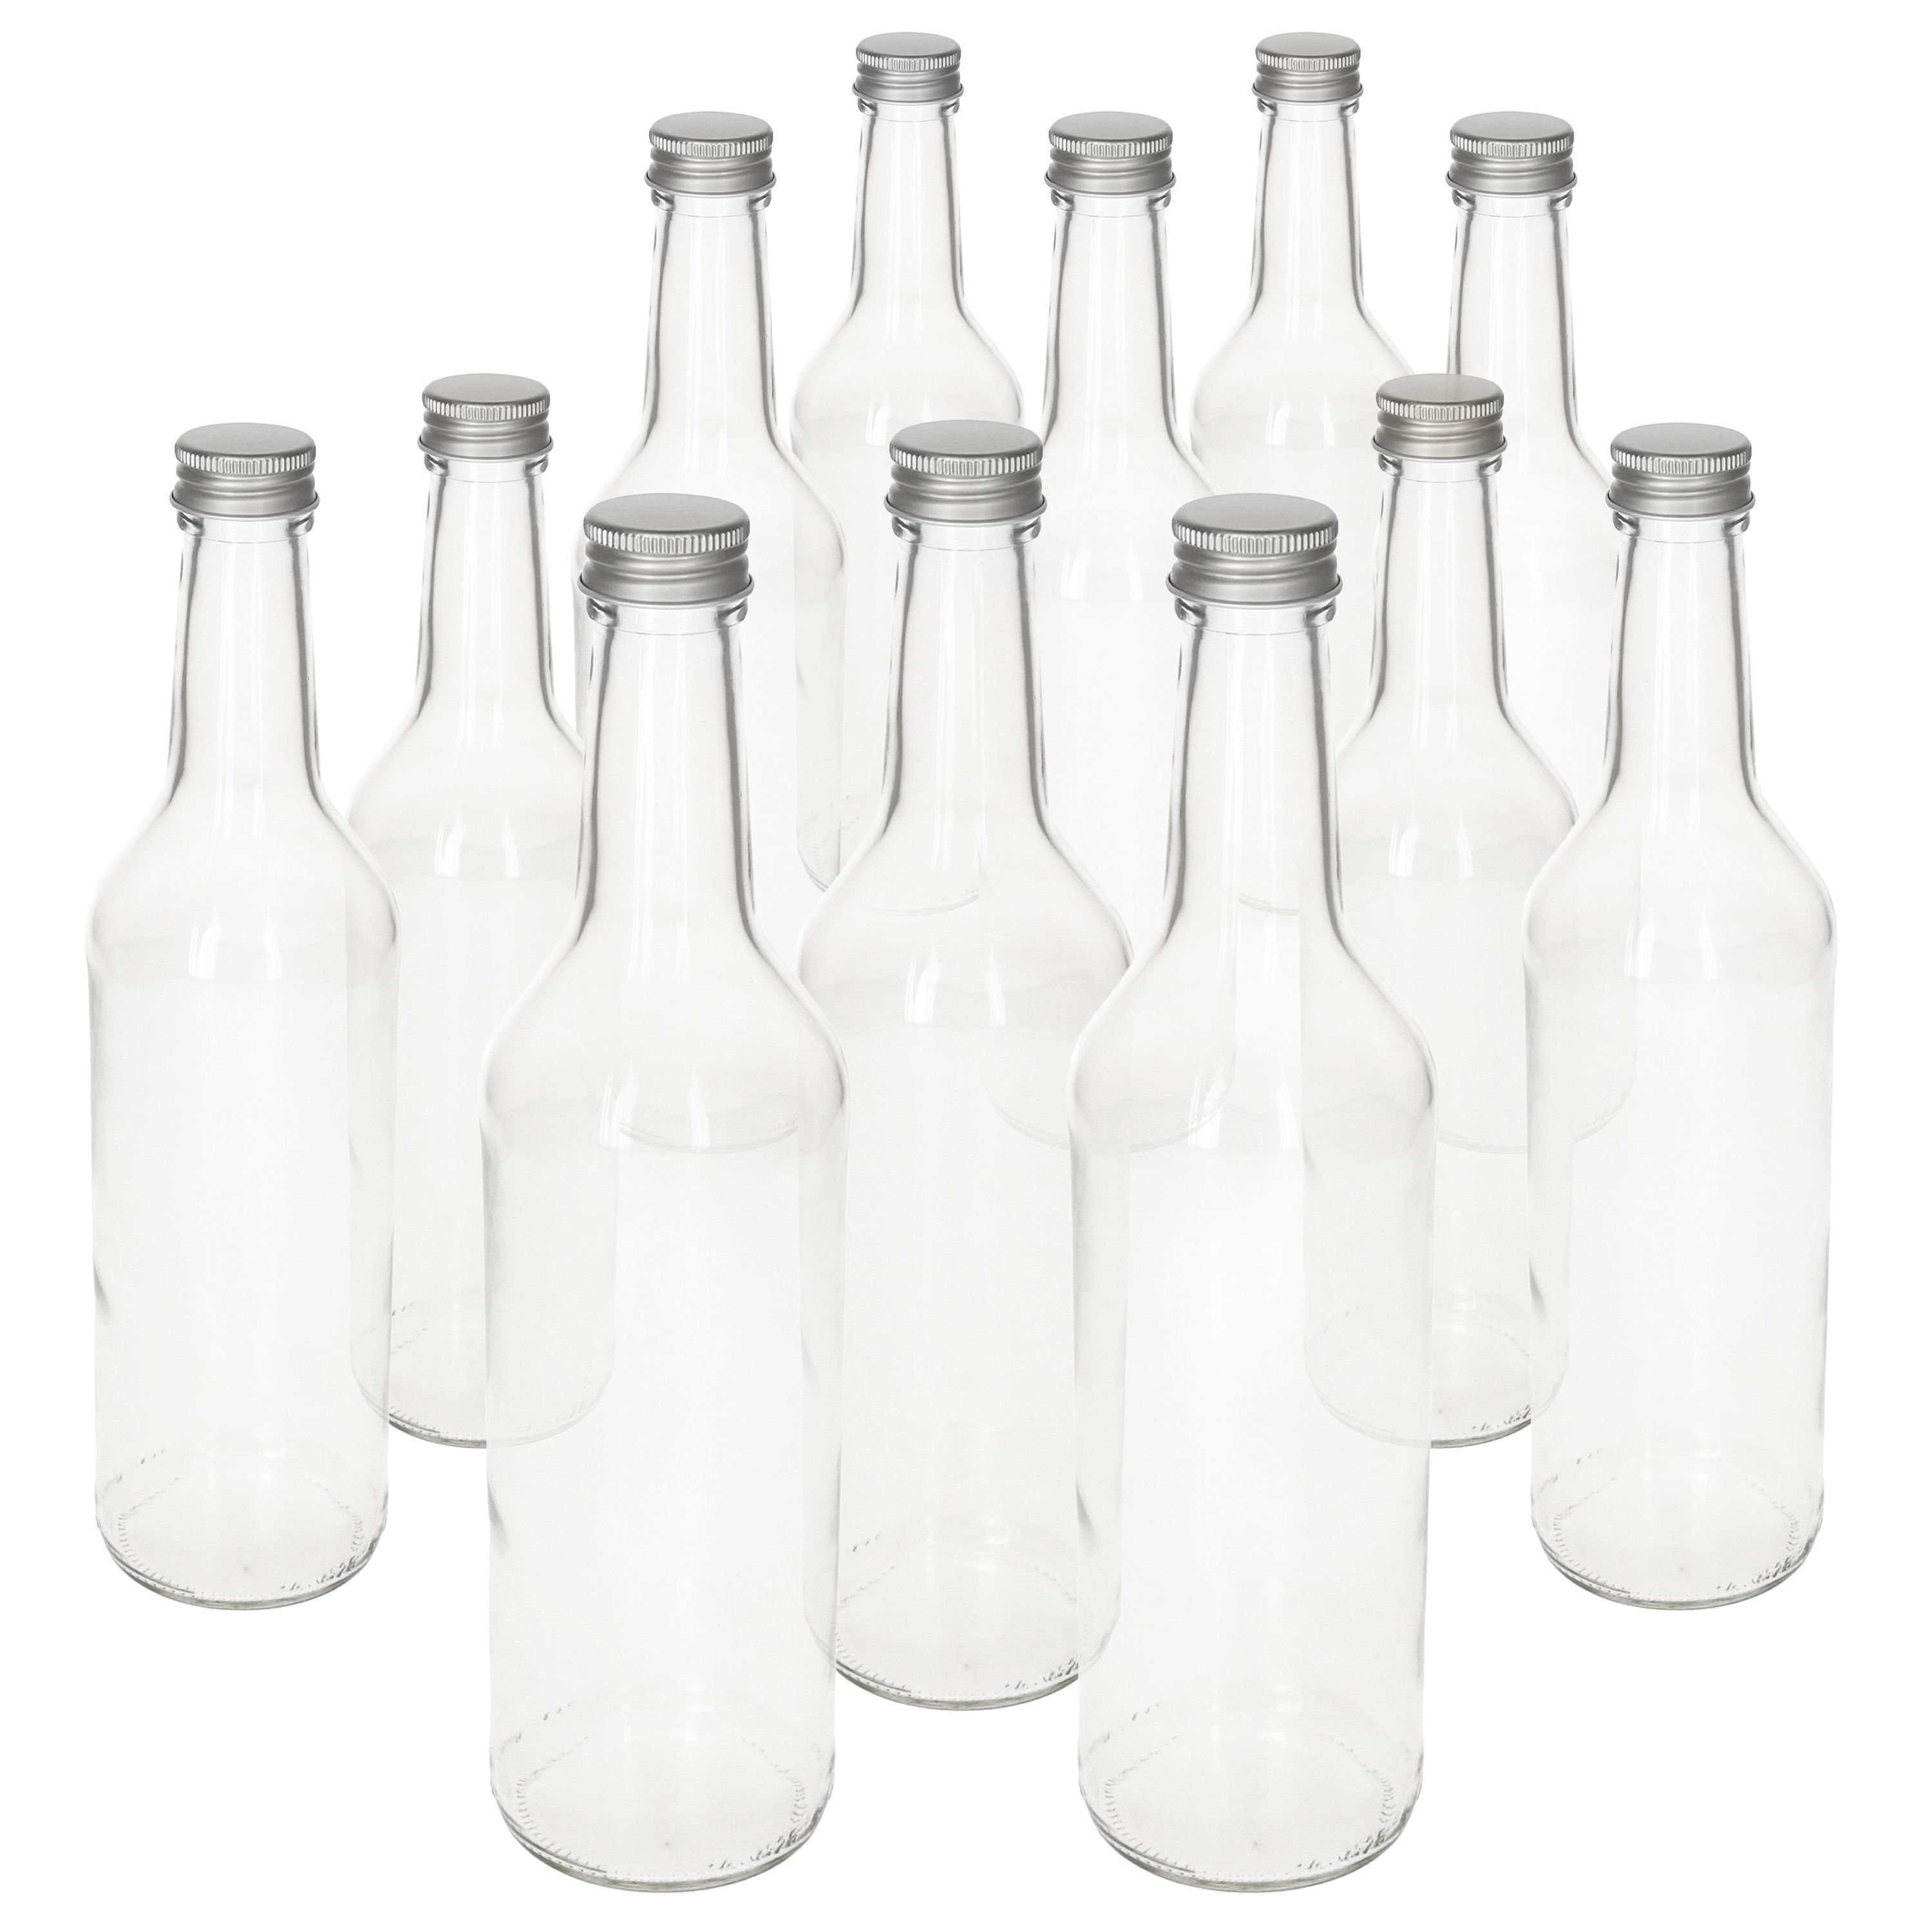 MamboCat Einmachglas 12er Geradhalsflasche + Schraubverschluss Deckel ml Silber, Set Glas 500